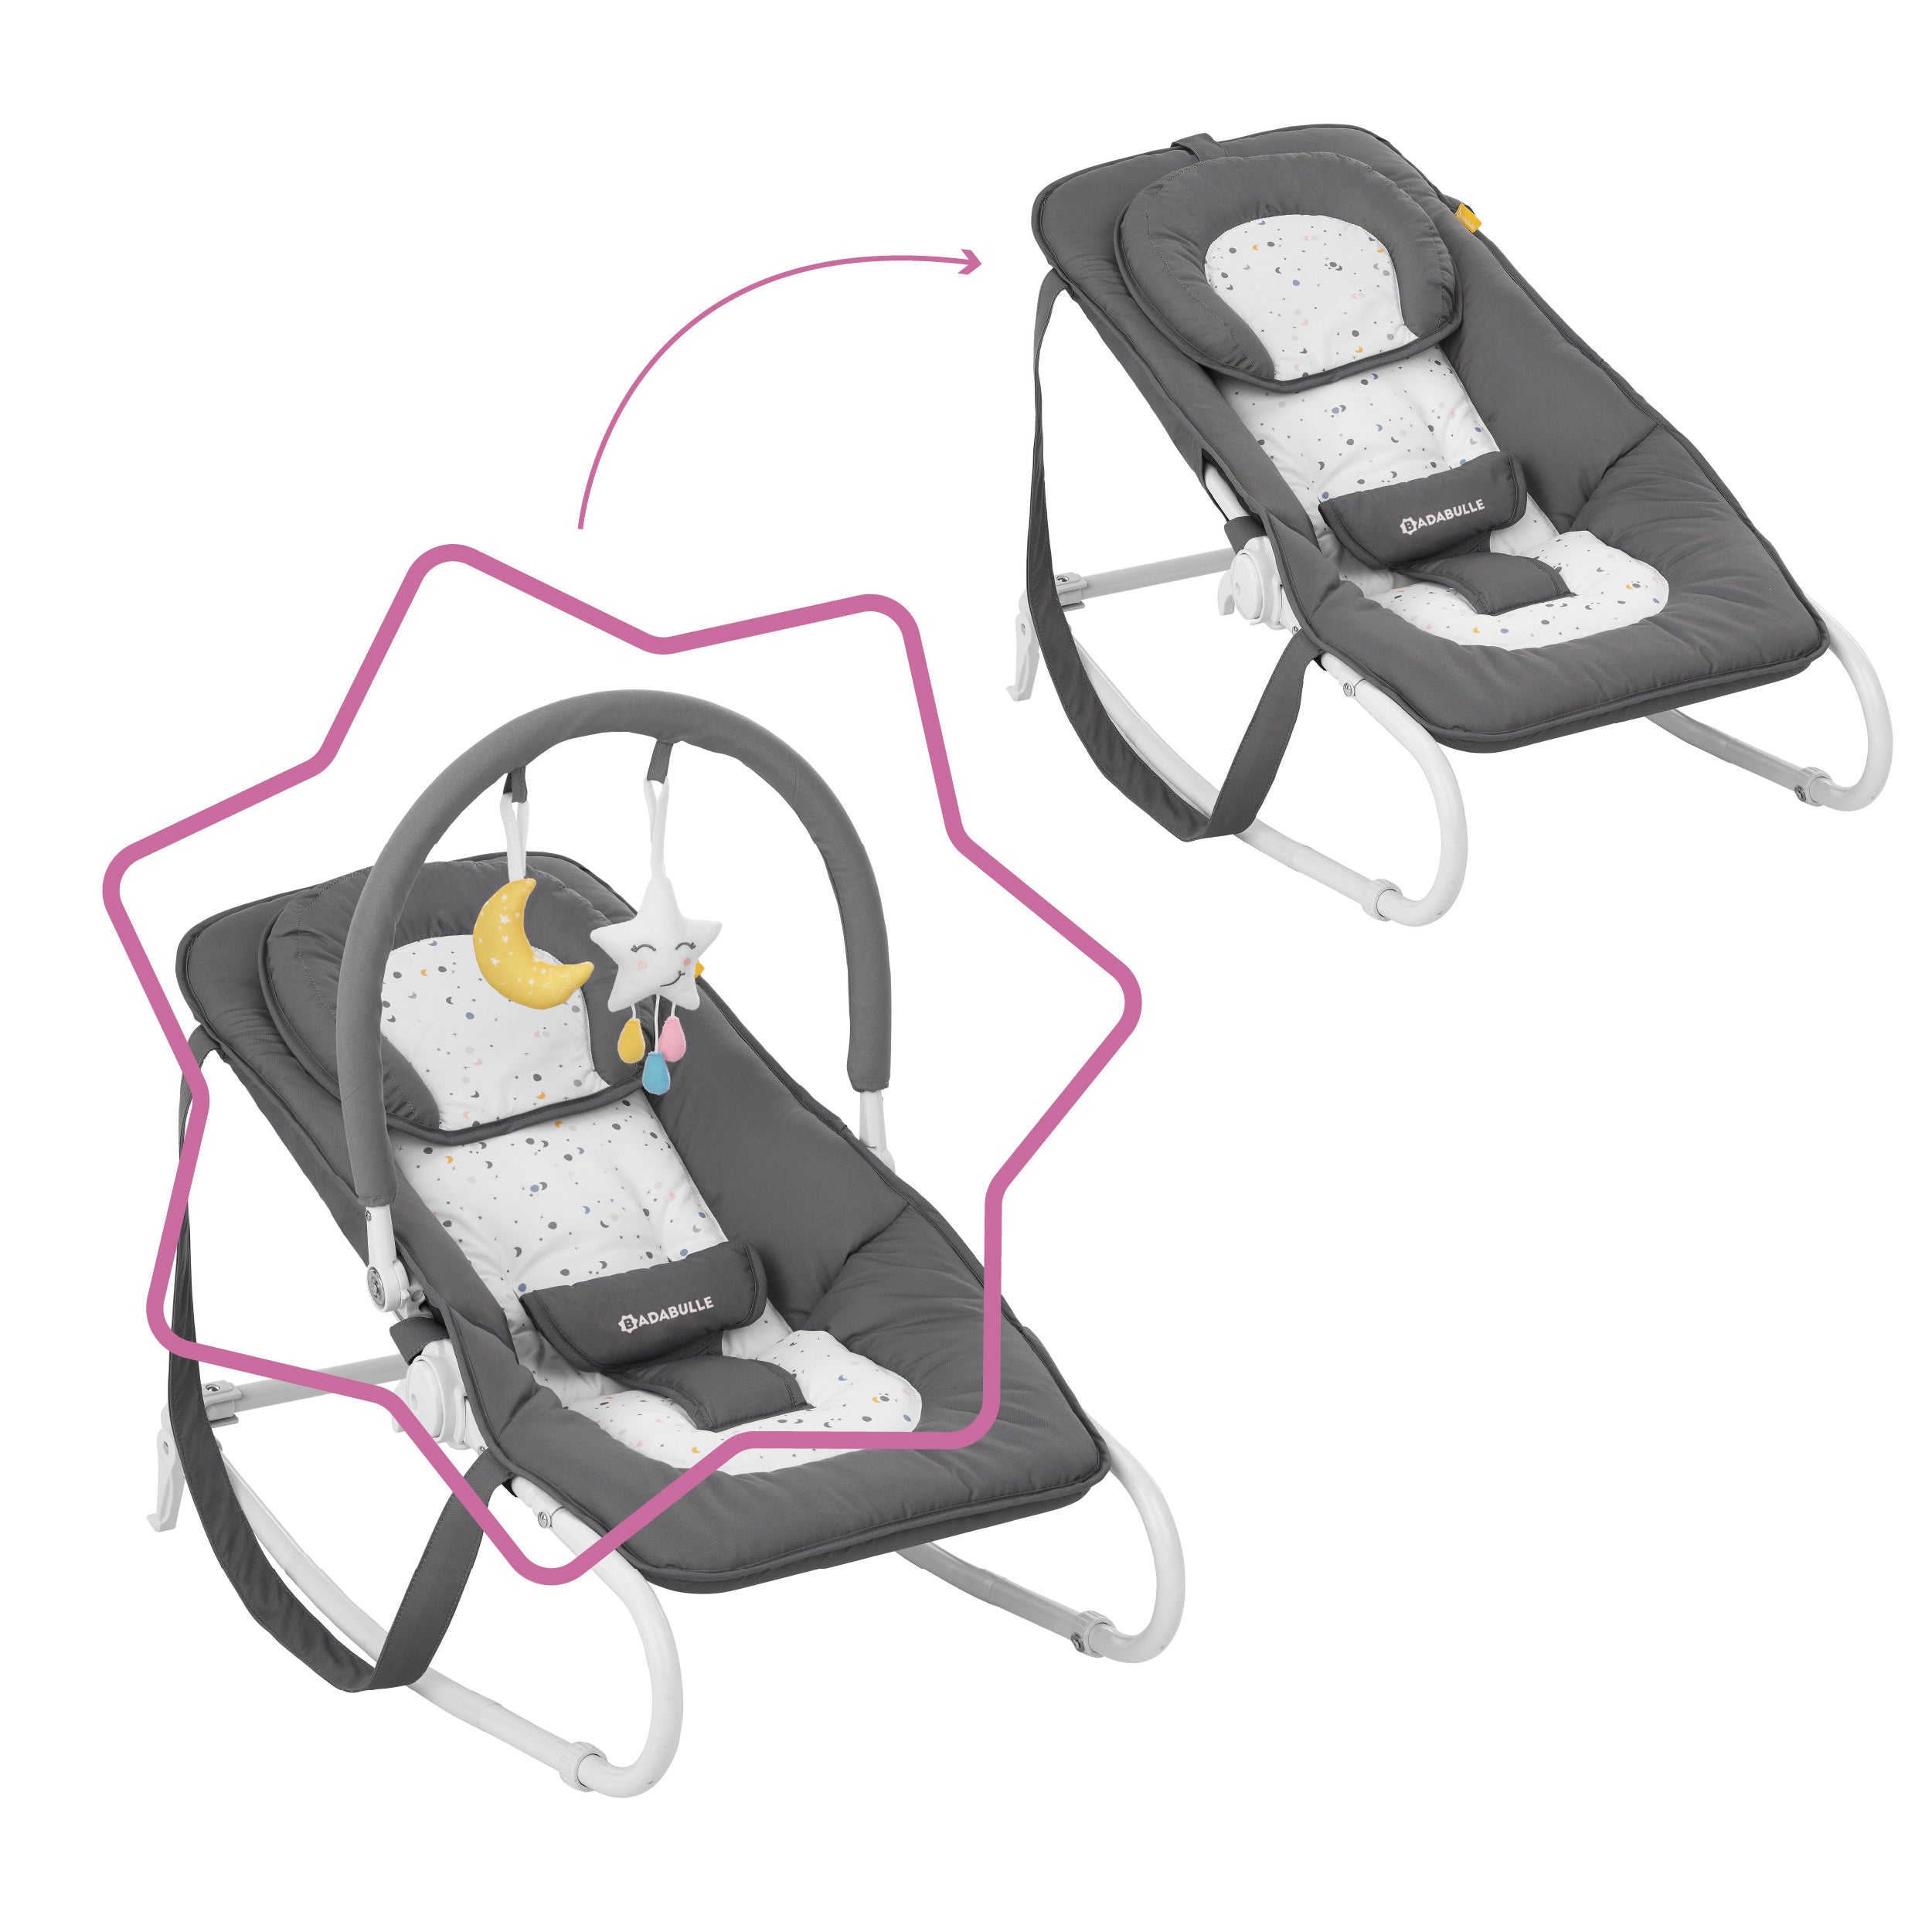 DE // Transat balancelle bébé easy ultra confort 5 positions